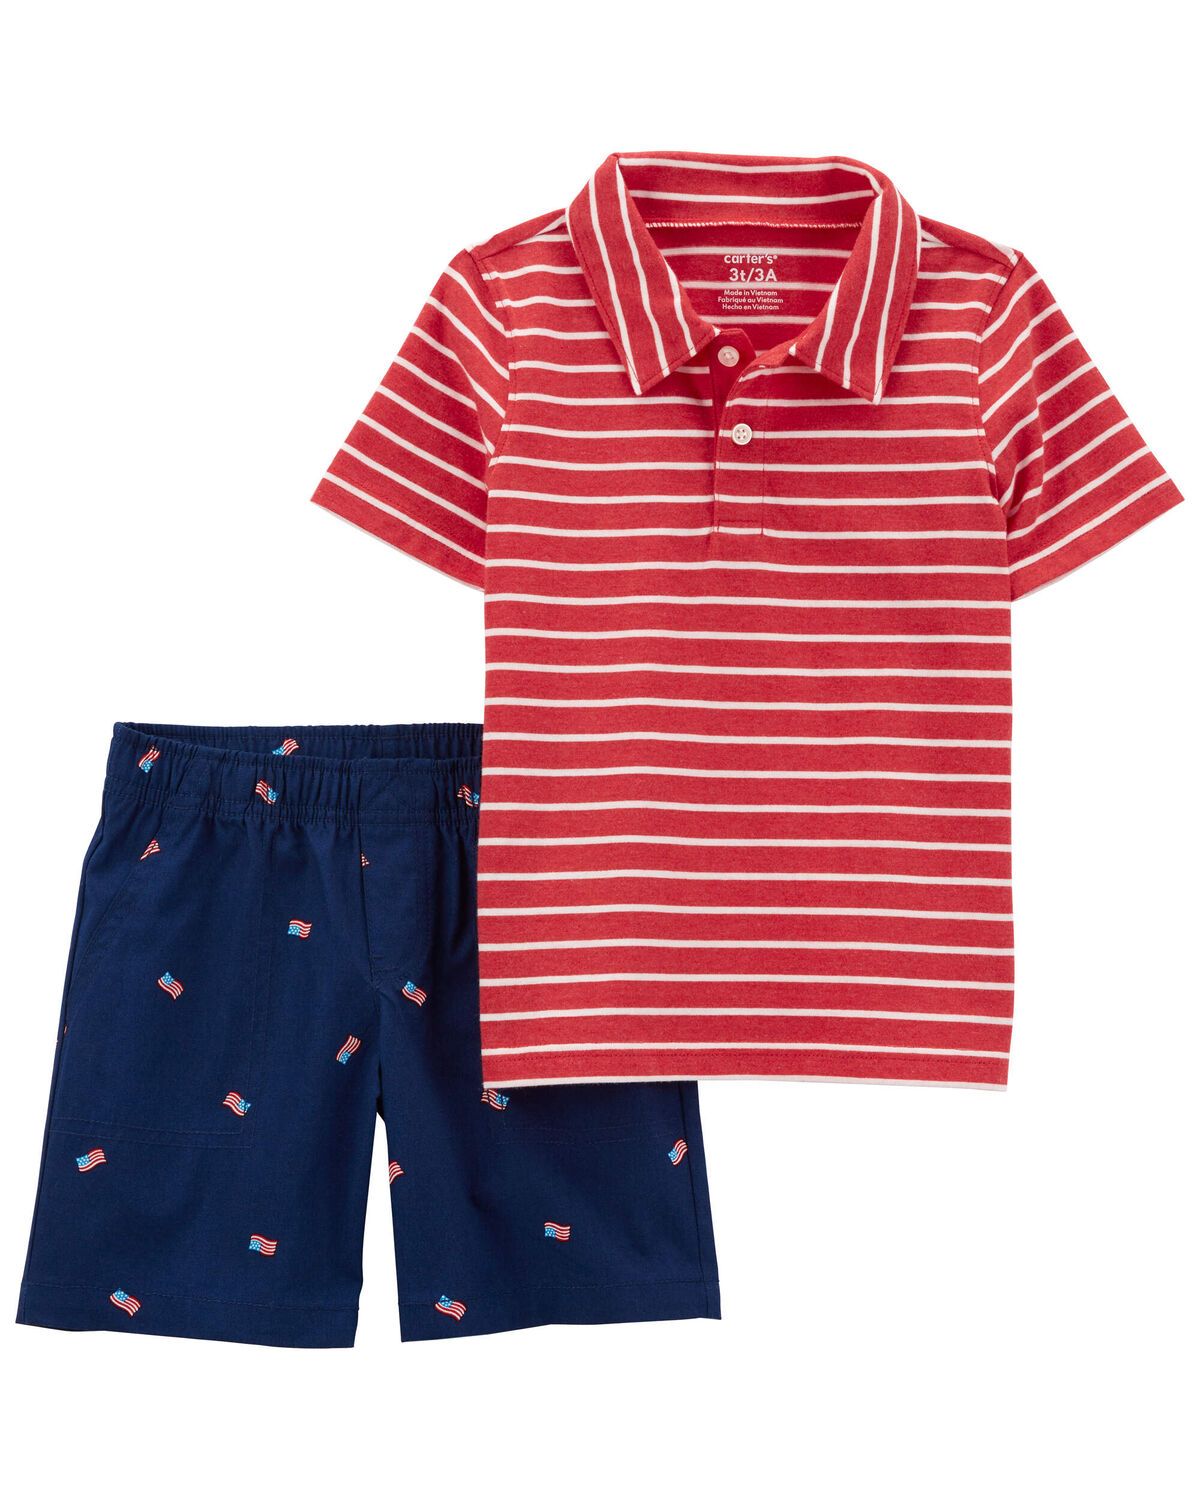 Red Toddler 2-Piece Striped Polo Shirt & Short Set | carters.com | Carter's